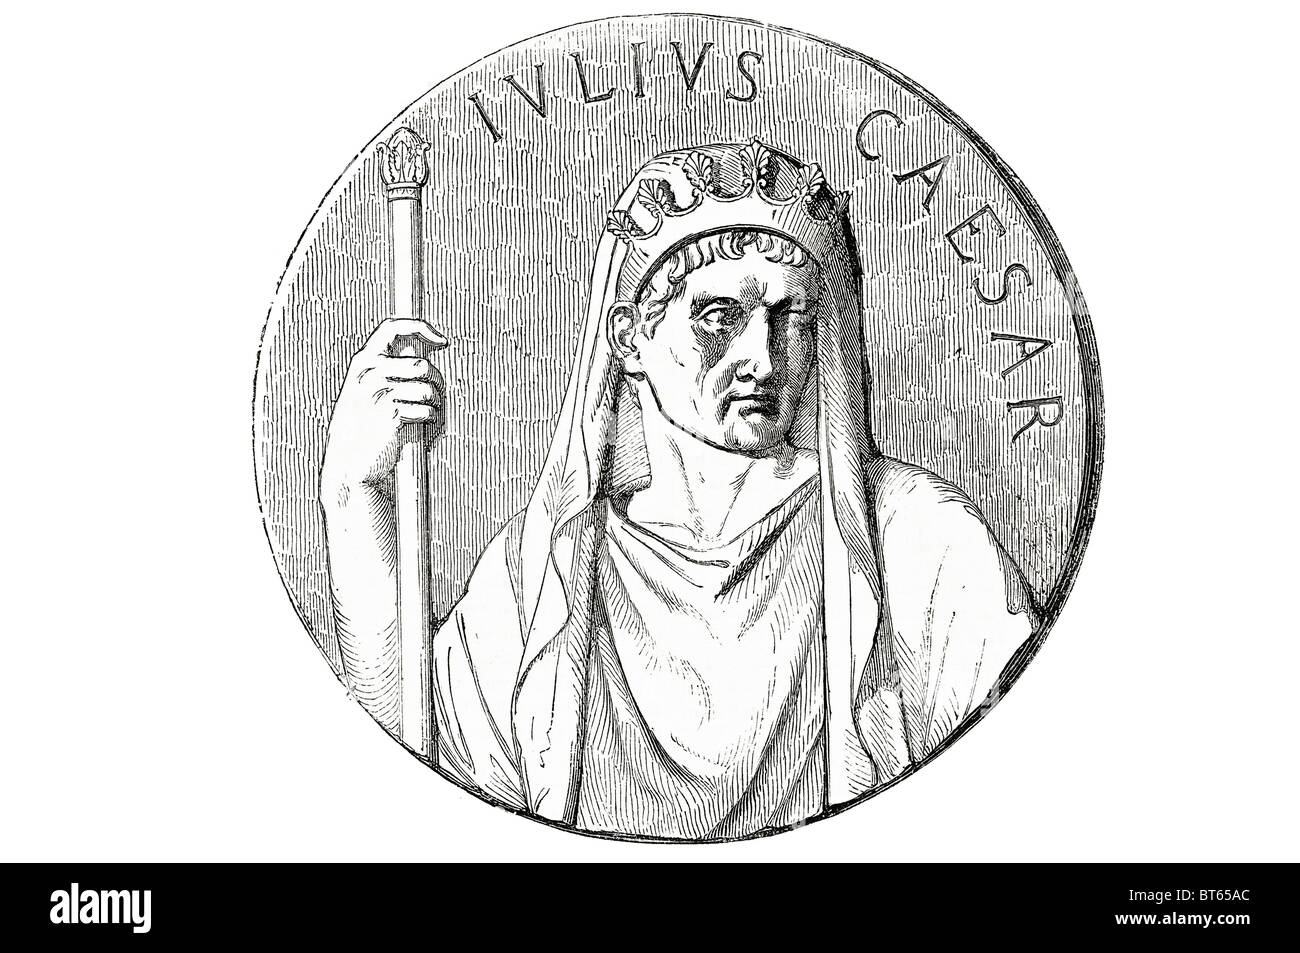 Gaius Julius Caesar Augustus apothéose de camée agate de la sante 13 Juillet 100 avant J.-C. - 15 mars 44 av. général romain homme d'État. Ro Banque D'Images